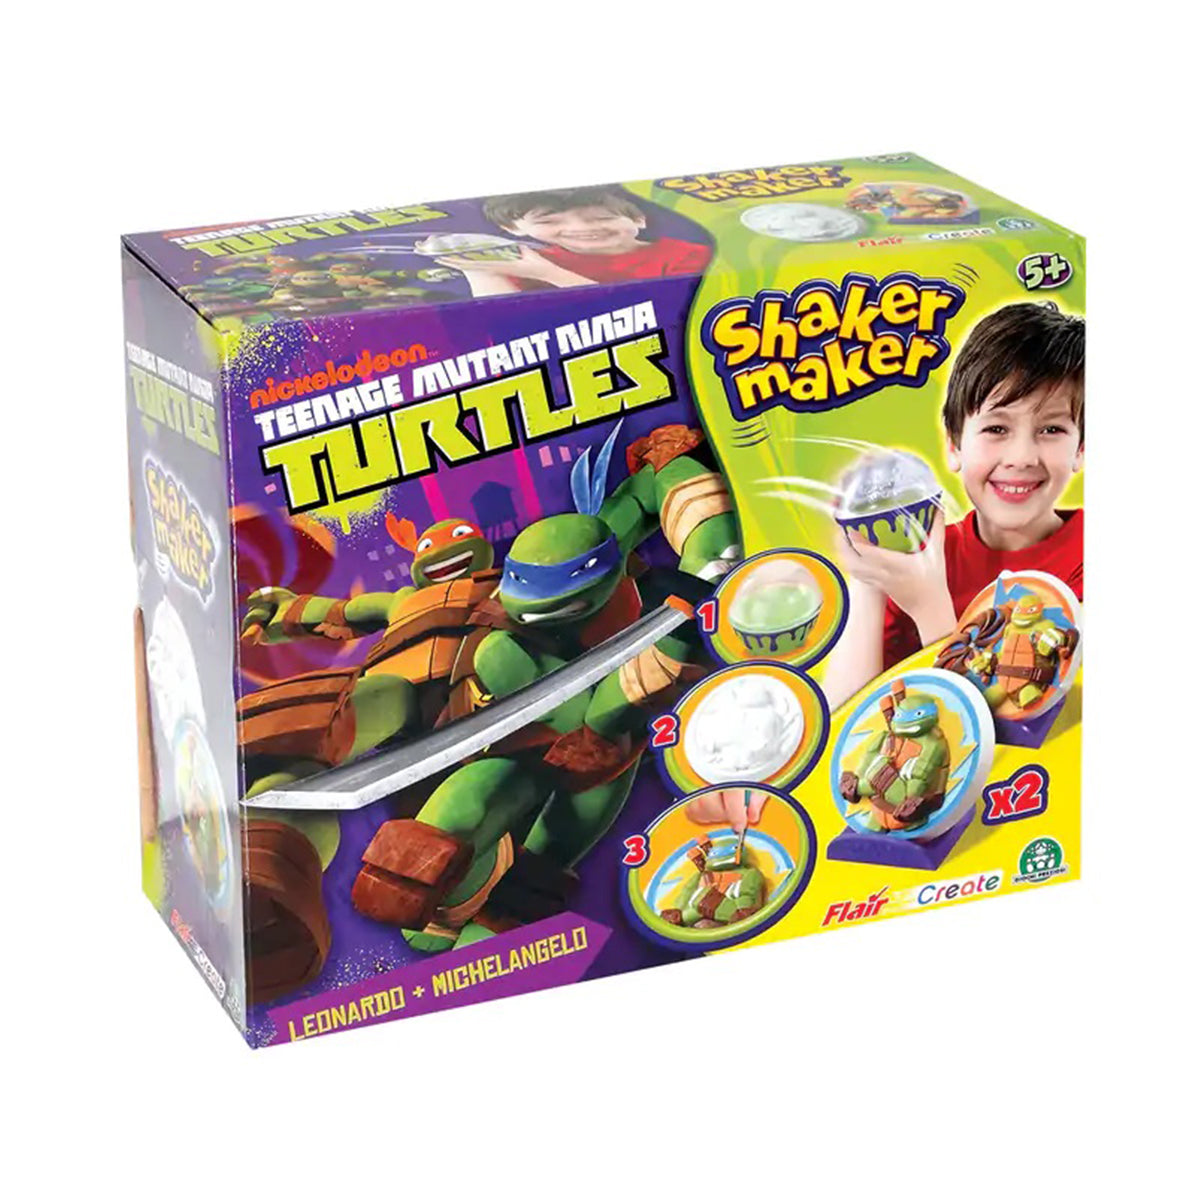 Teenage Mutant Ninja Turtles Shaker Maker